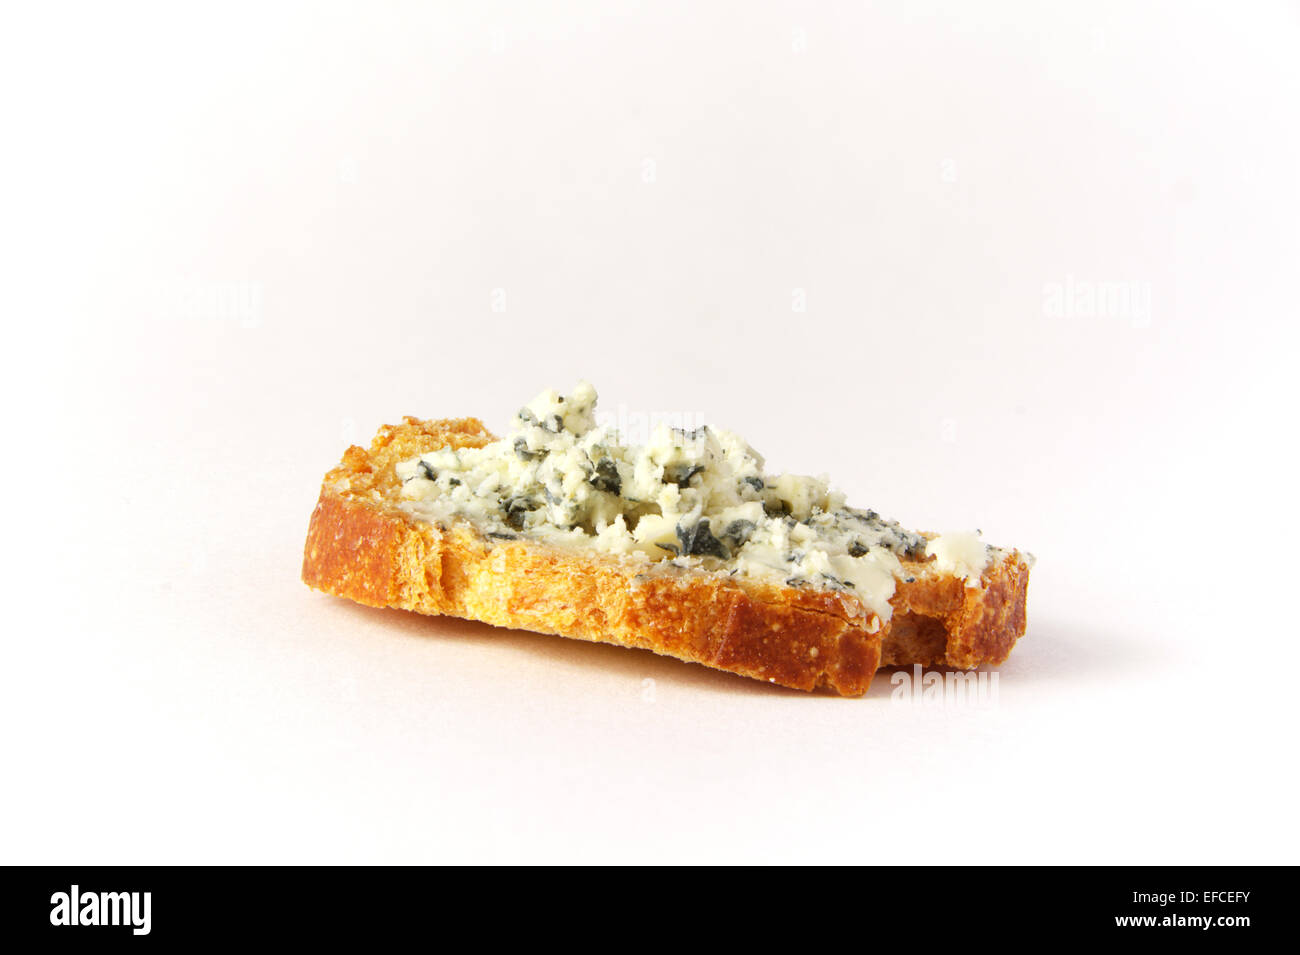 Un canapé de fromage bleu sur une tranche de baguette grillées sur fond blanc avec éclairage studio Banque D'Images